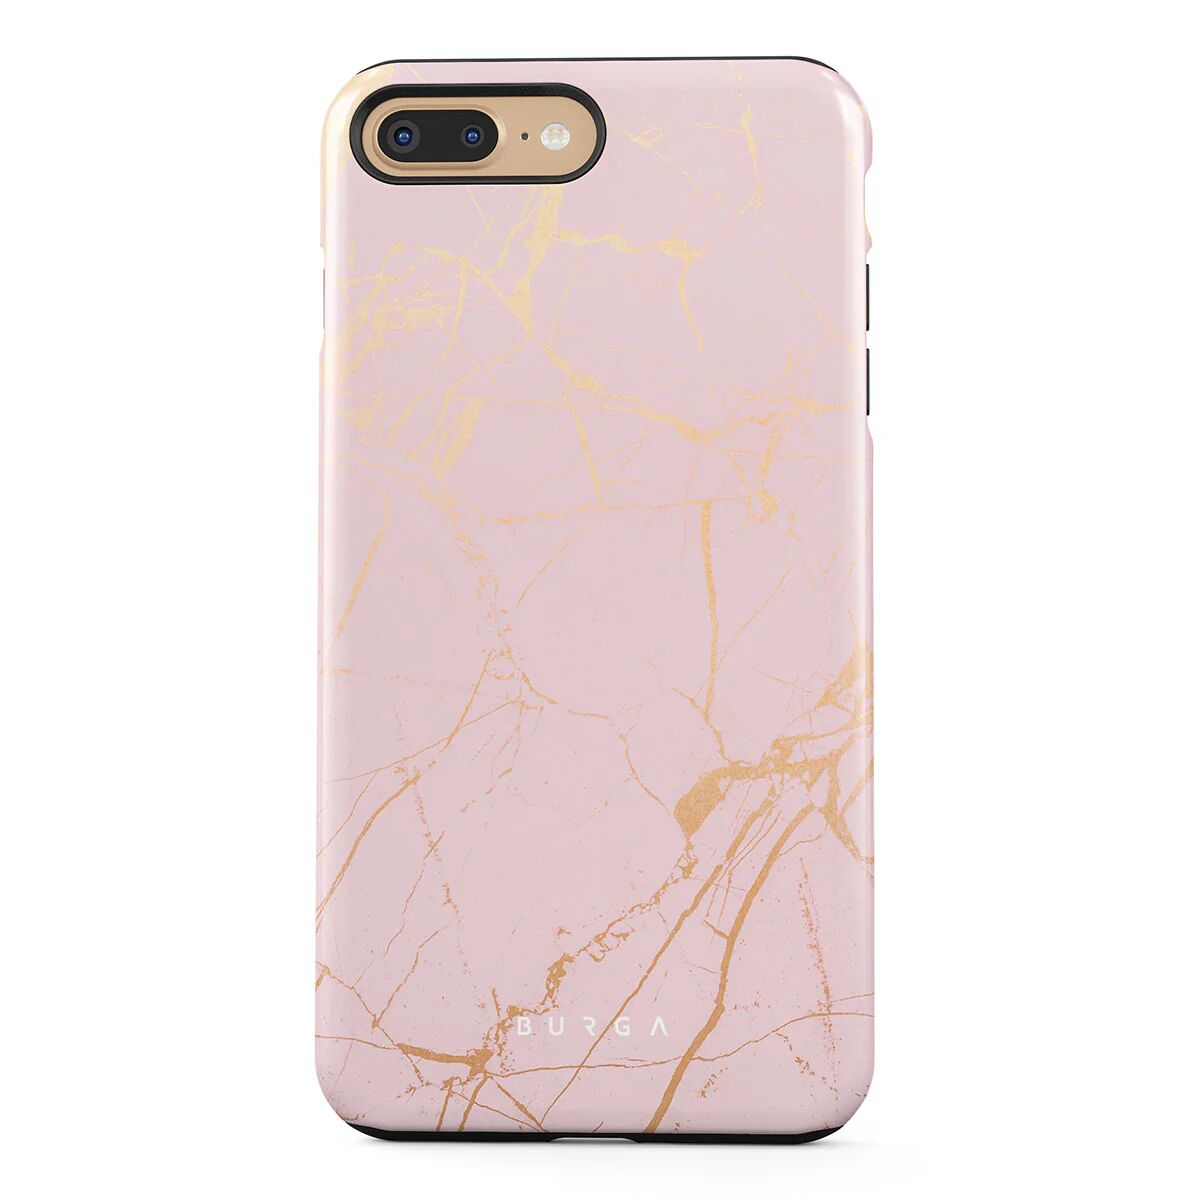 BURGA Peachy Gold - Pink Marble iPhone 7 Plus / 8 Plus Case